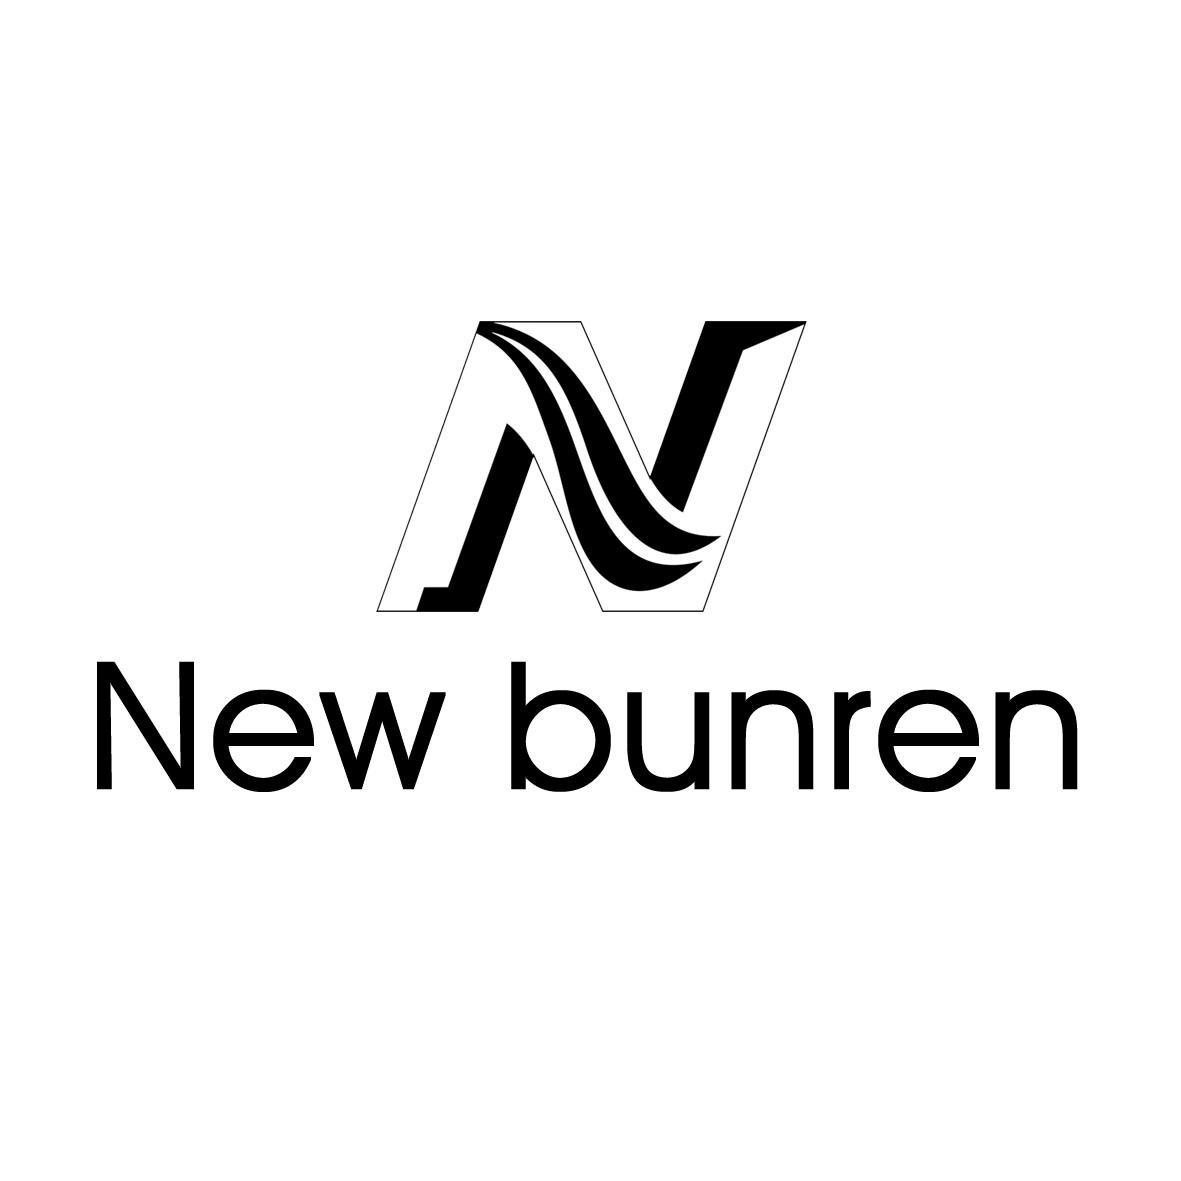 new bunren